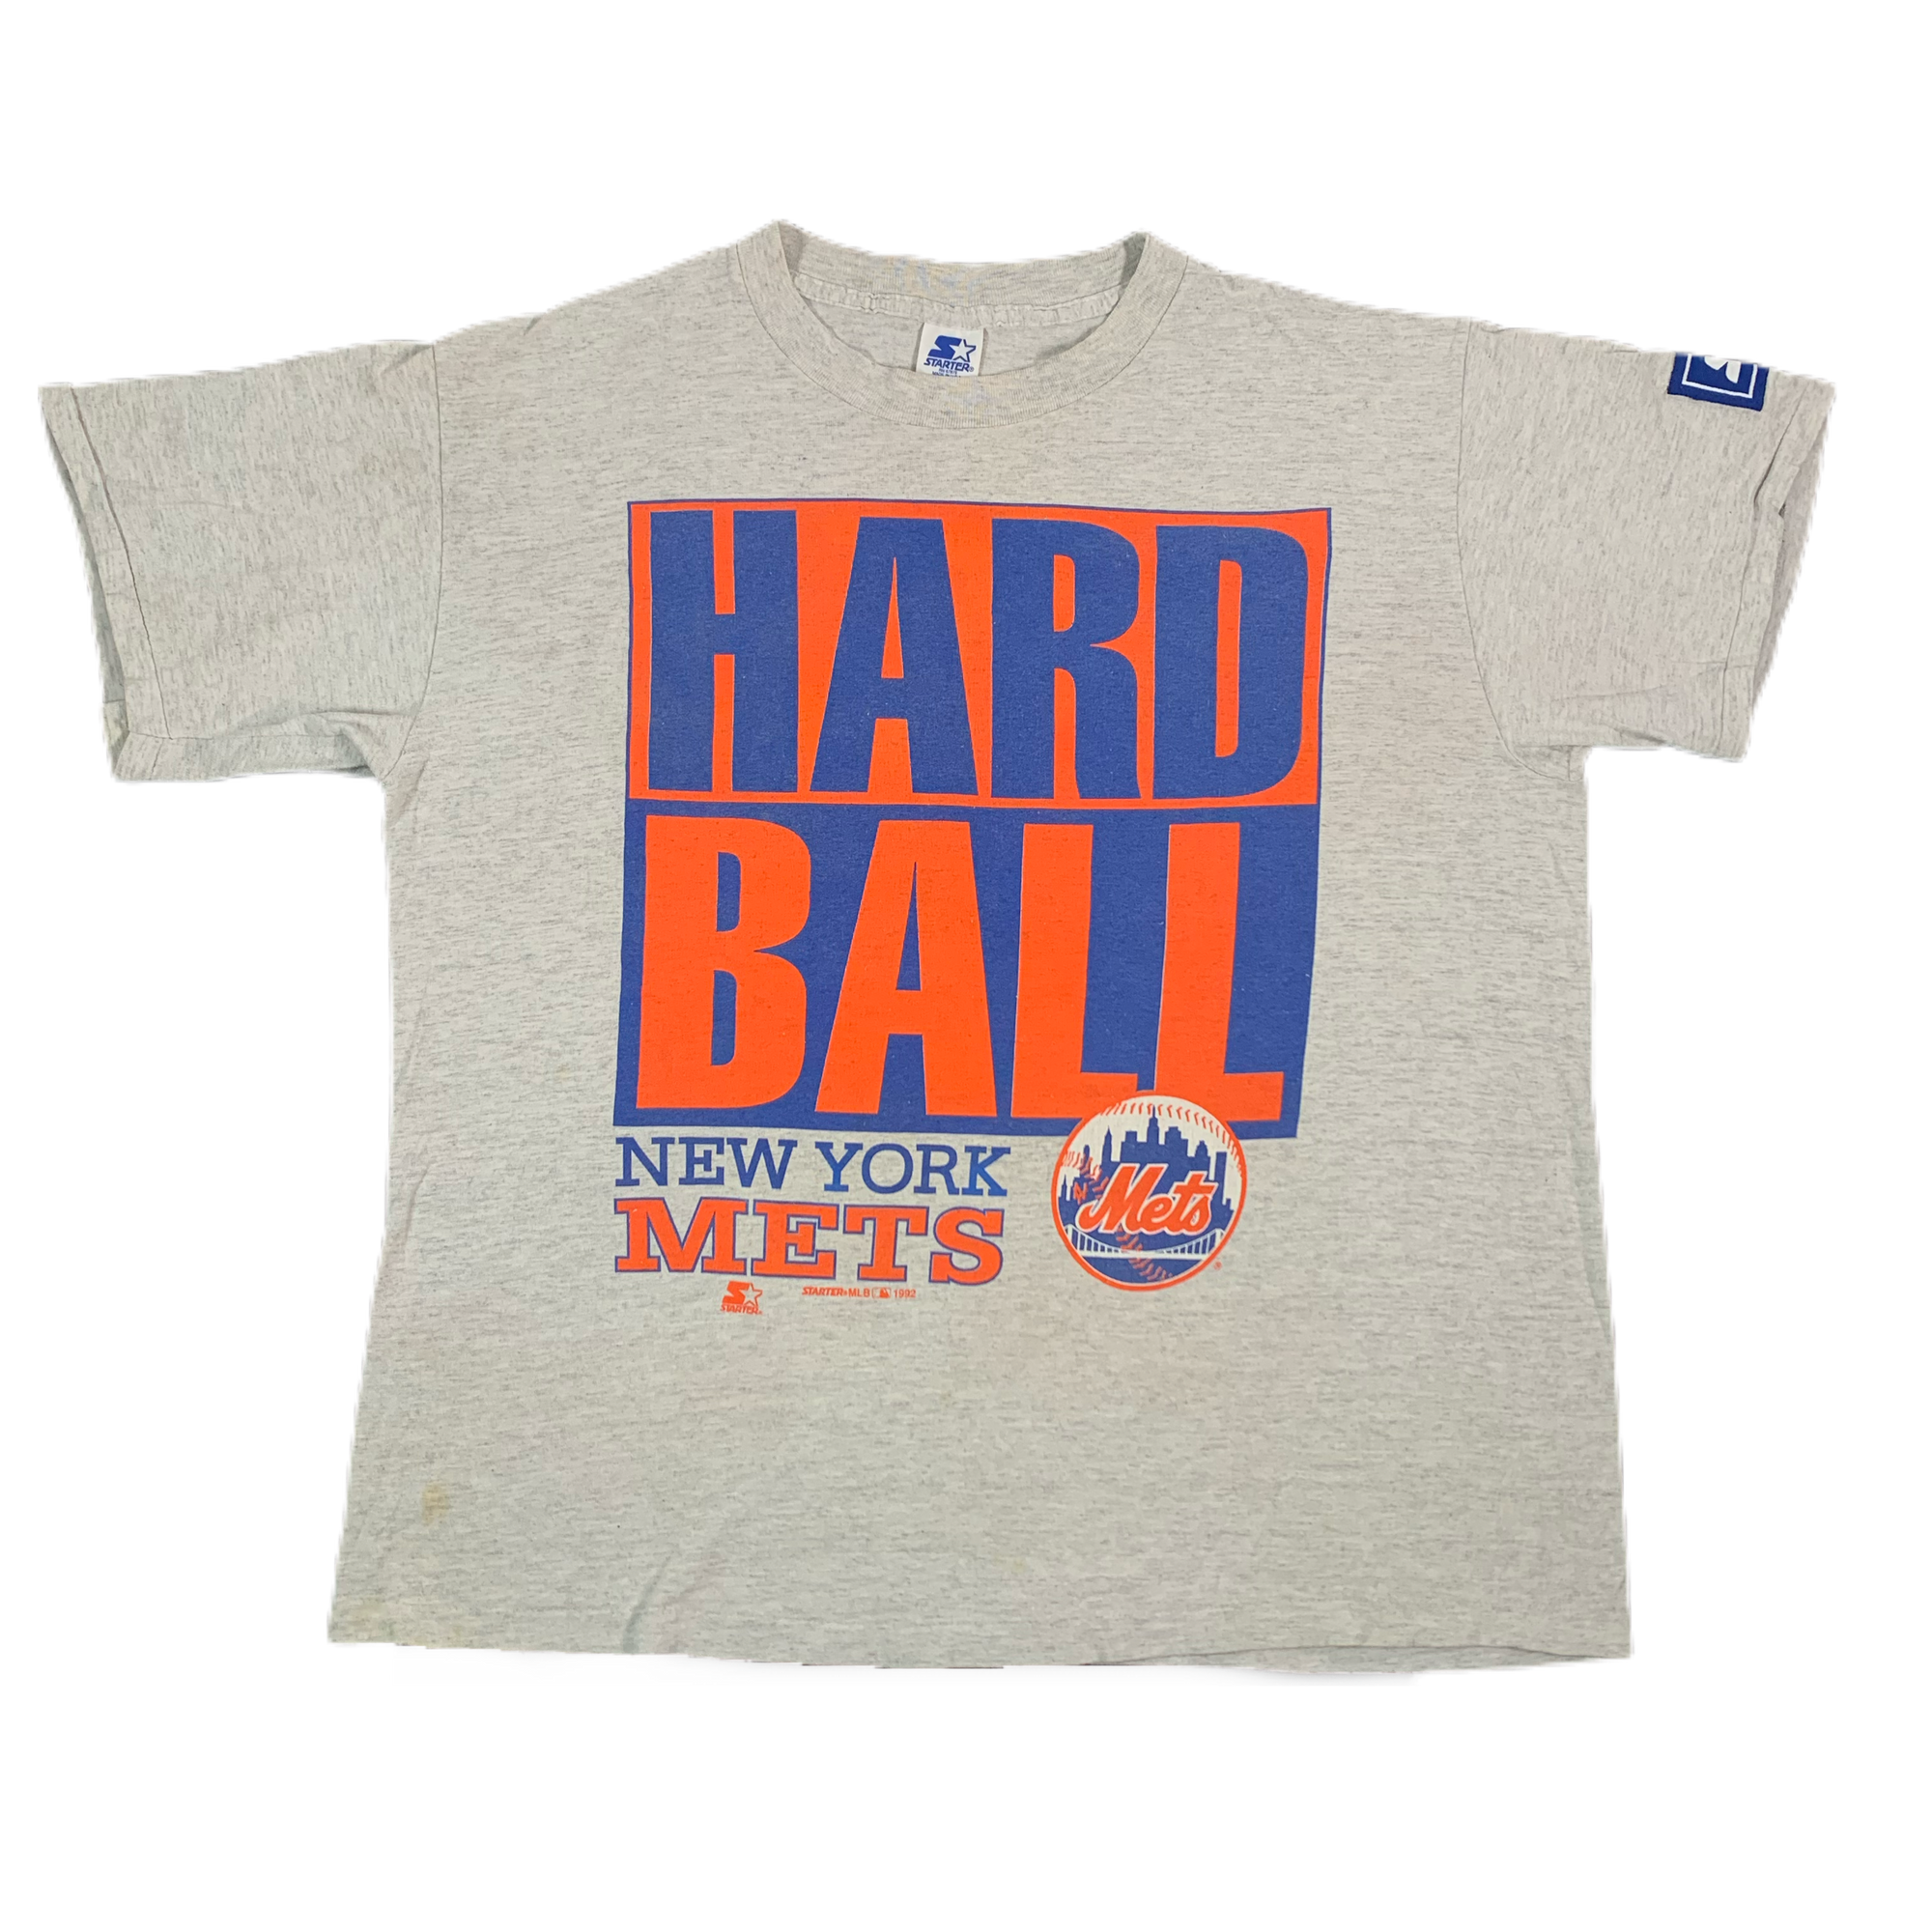 Vintage New York Mets Hard Ball "Starter" T-Shirt - jointcustodydc